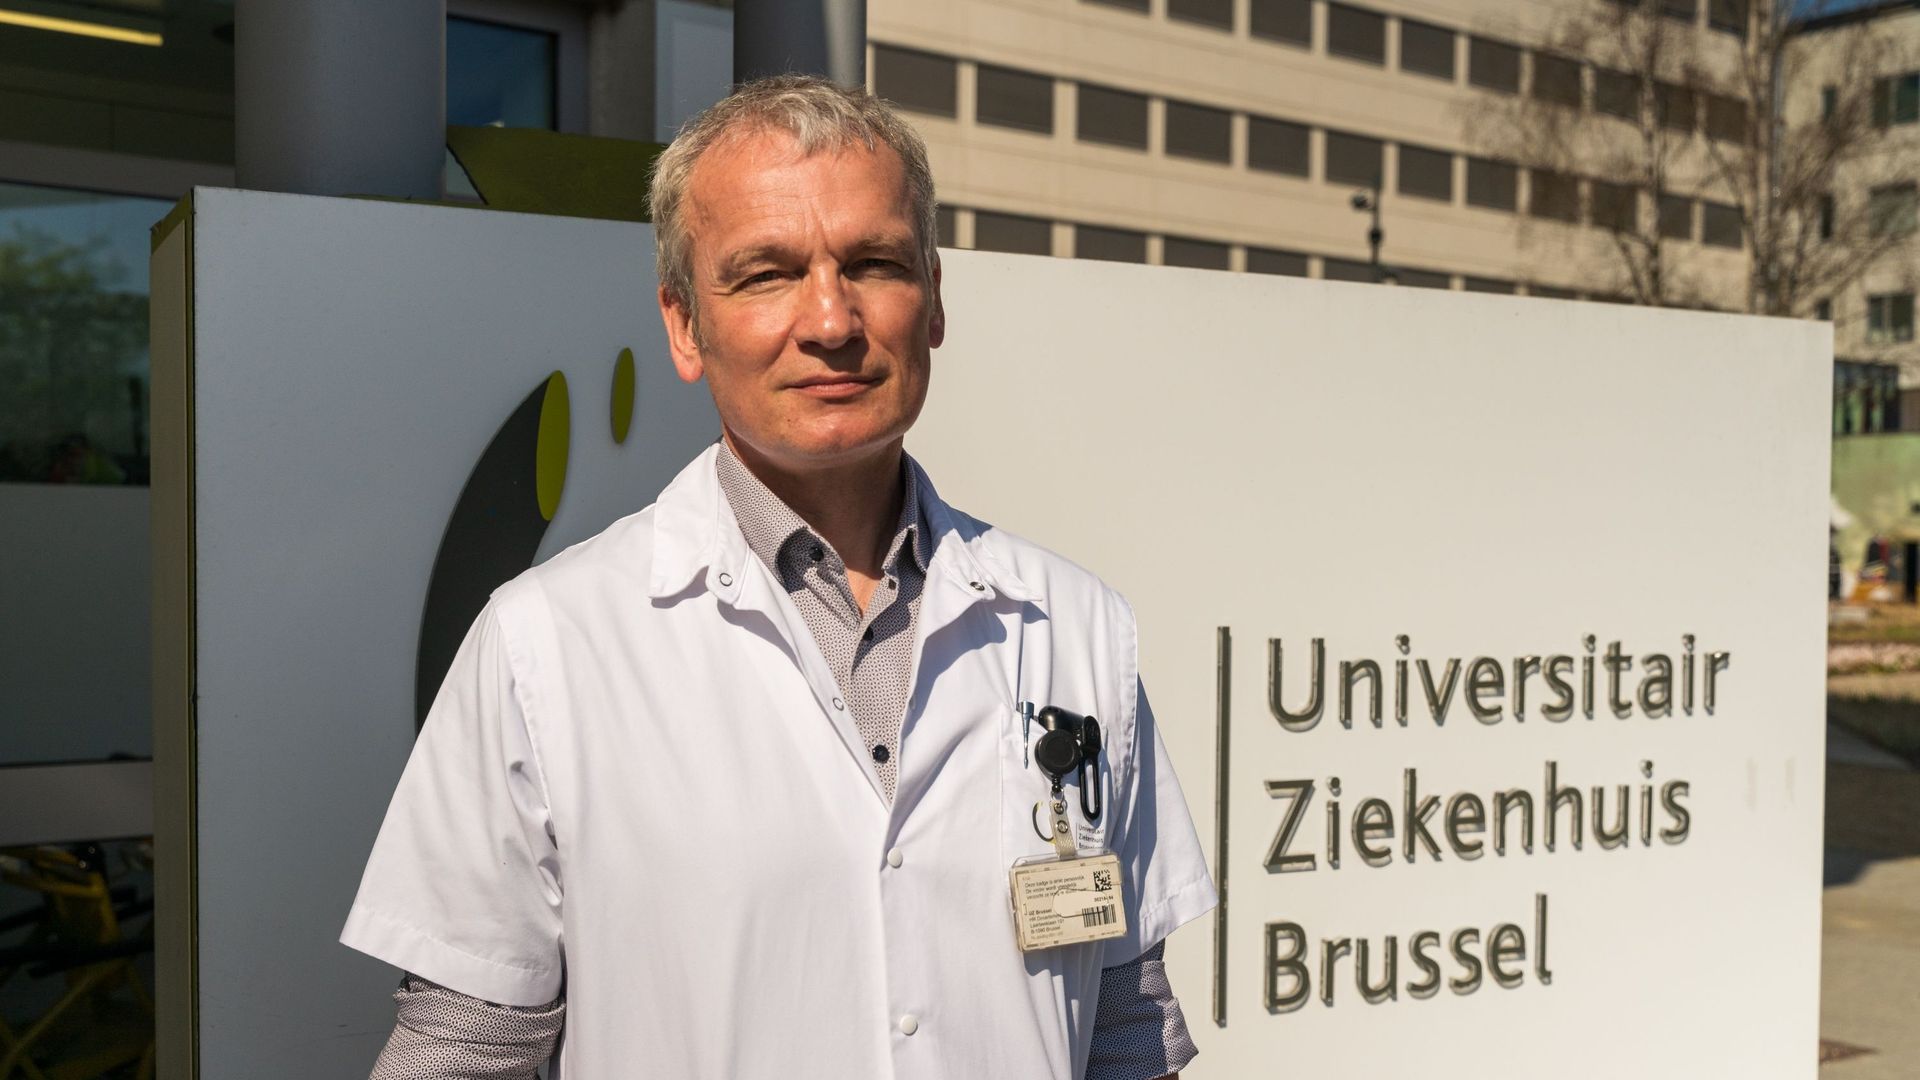 Karl Martin Wissing, néphrologue à l’UZ Brussel et président de la fédération belge de transplantation.